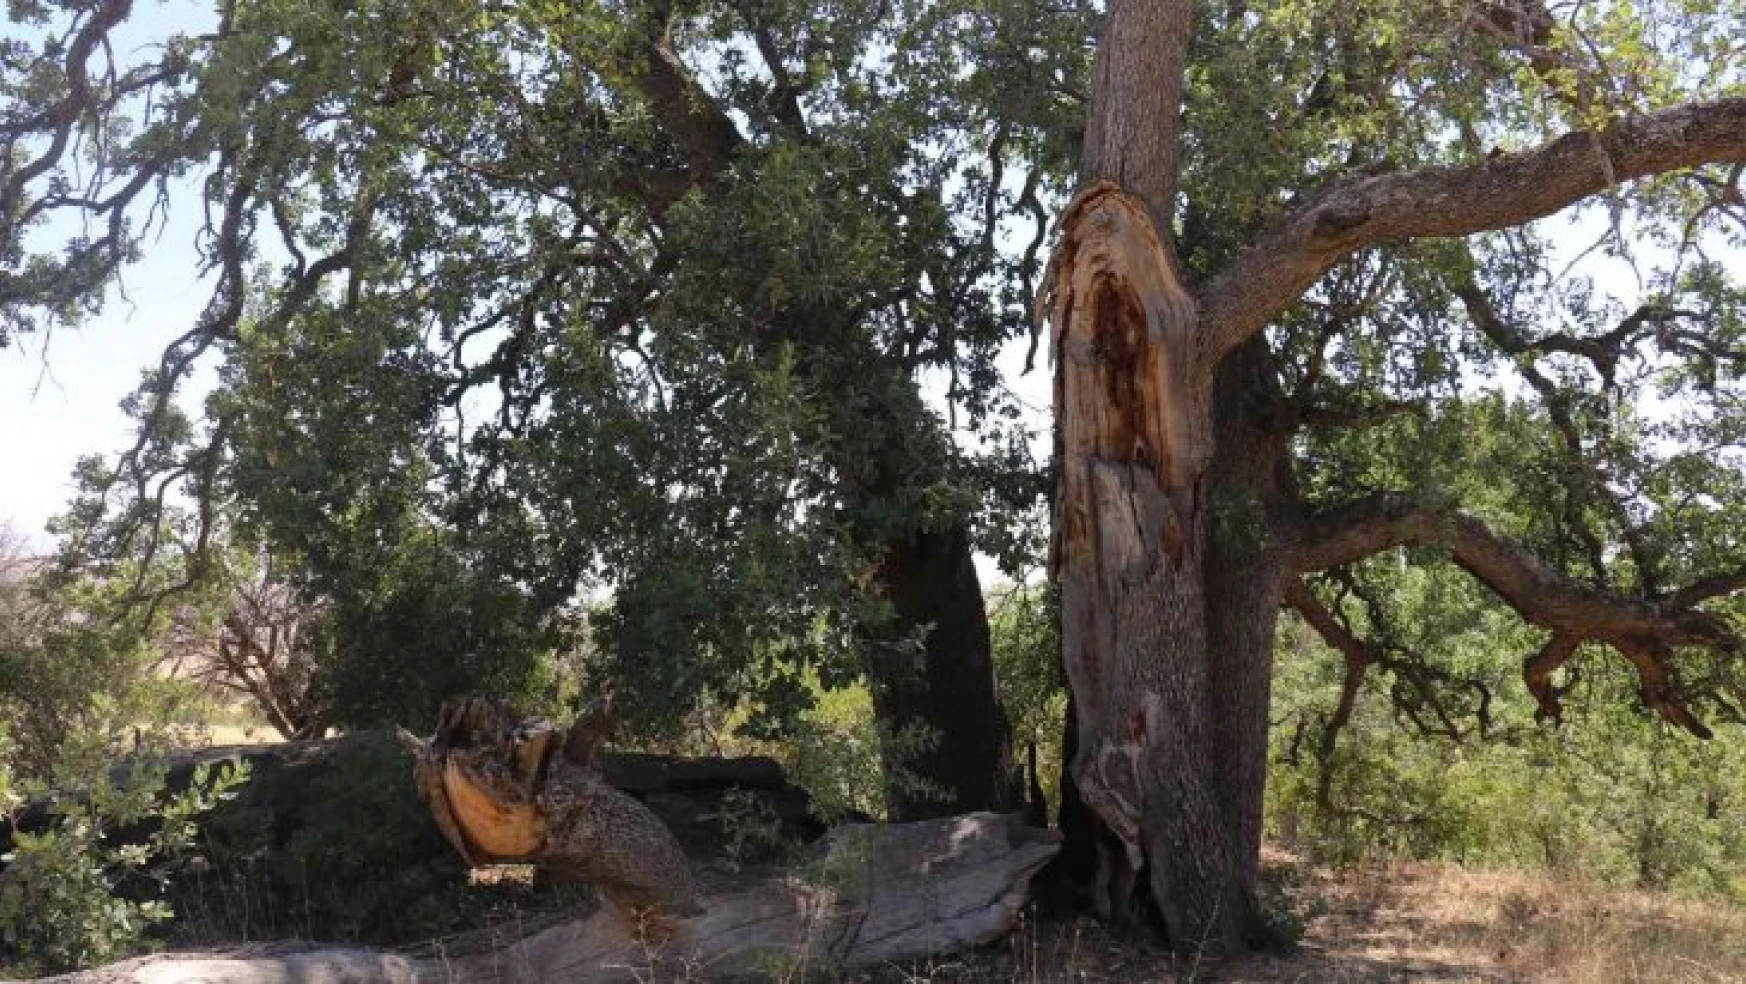 Yeni gelinin batıl inancı 500 yıllık meşe ağacını yaktı